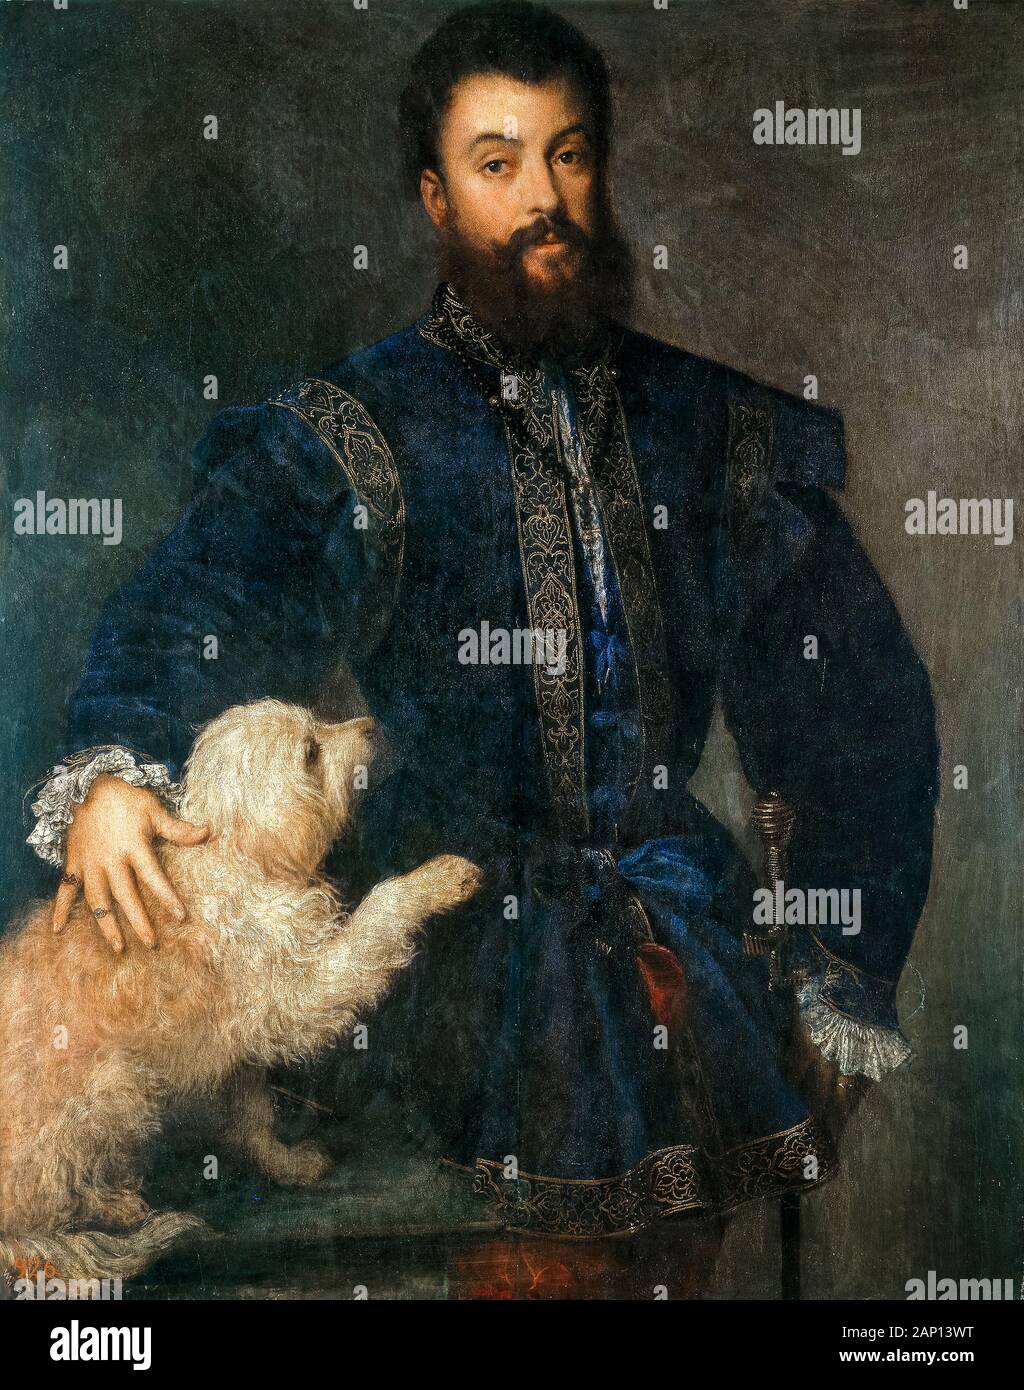 Federico II Gonzaga, duc de Mantoue, portrait à l'huile sur toile de Titien, Tiziano Vecellio, vers 1525 Banque D'Images